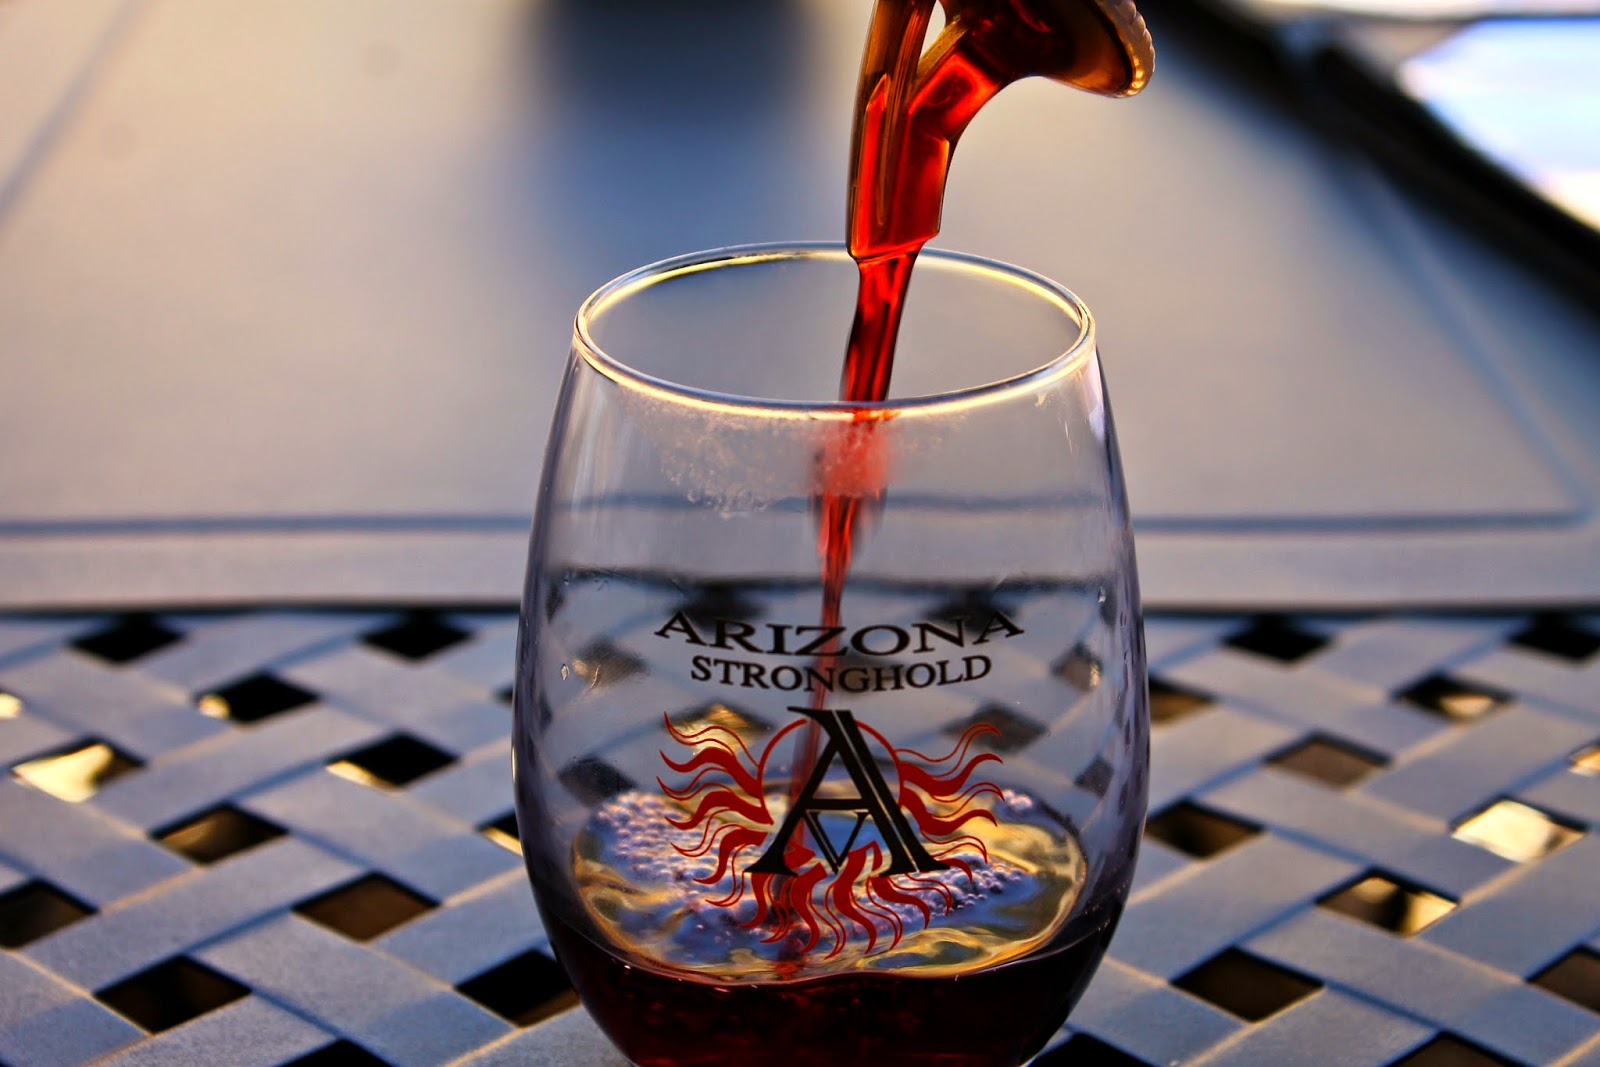 Arizona Stronghold Winery #Travel